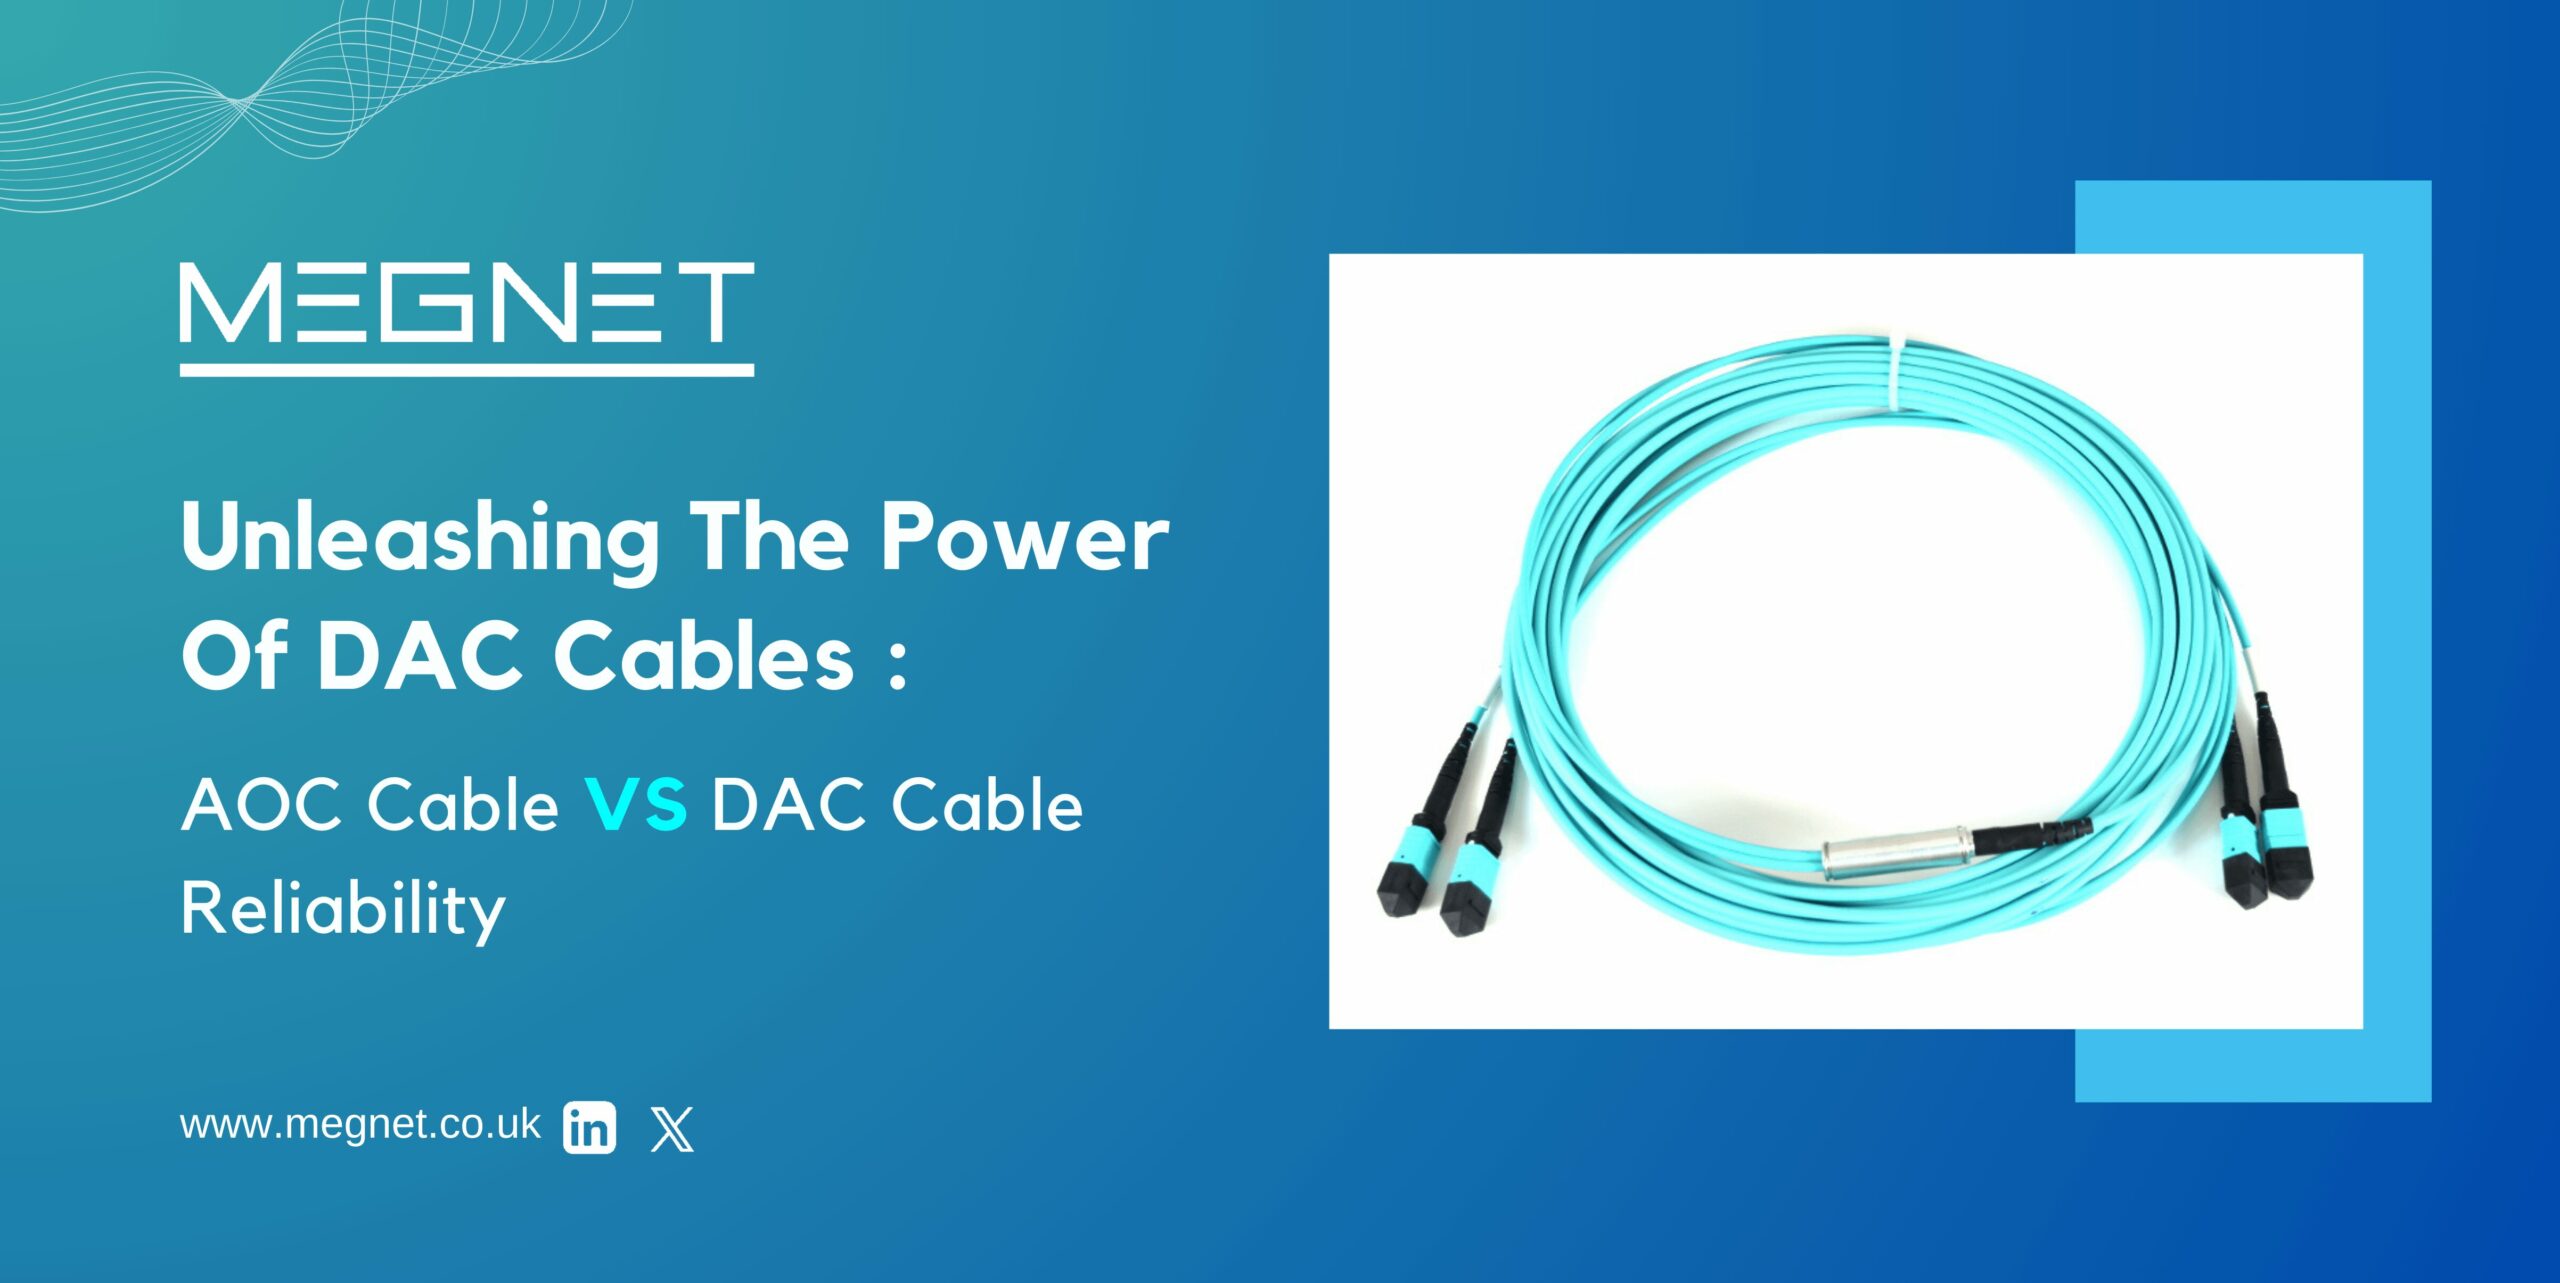 AOC Cable vs DAC Cable 